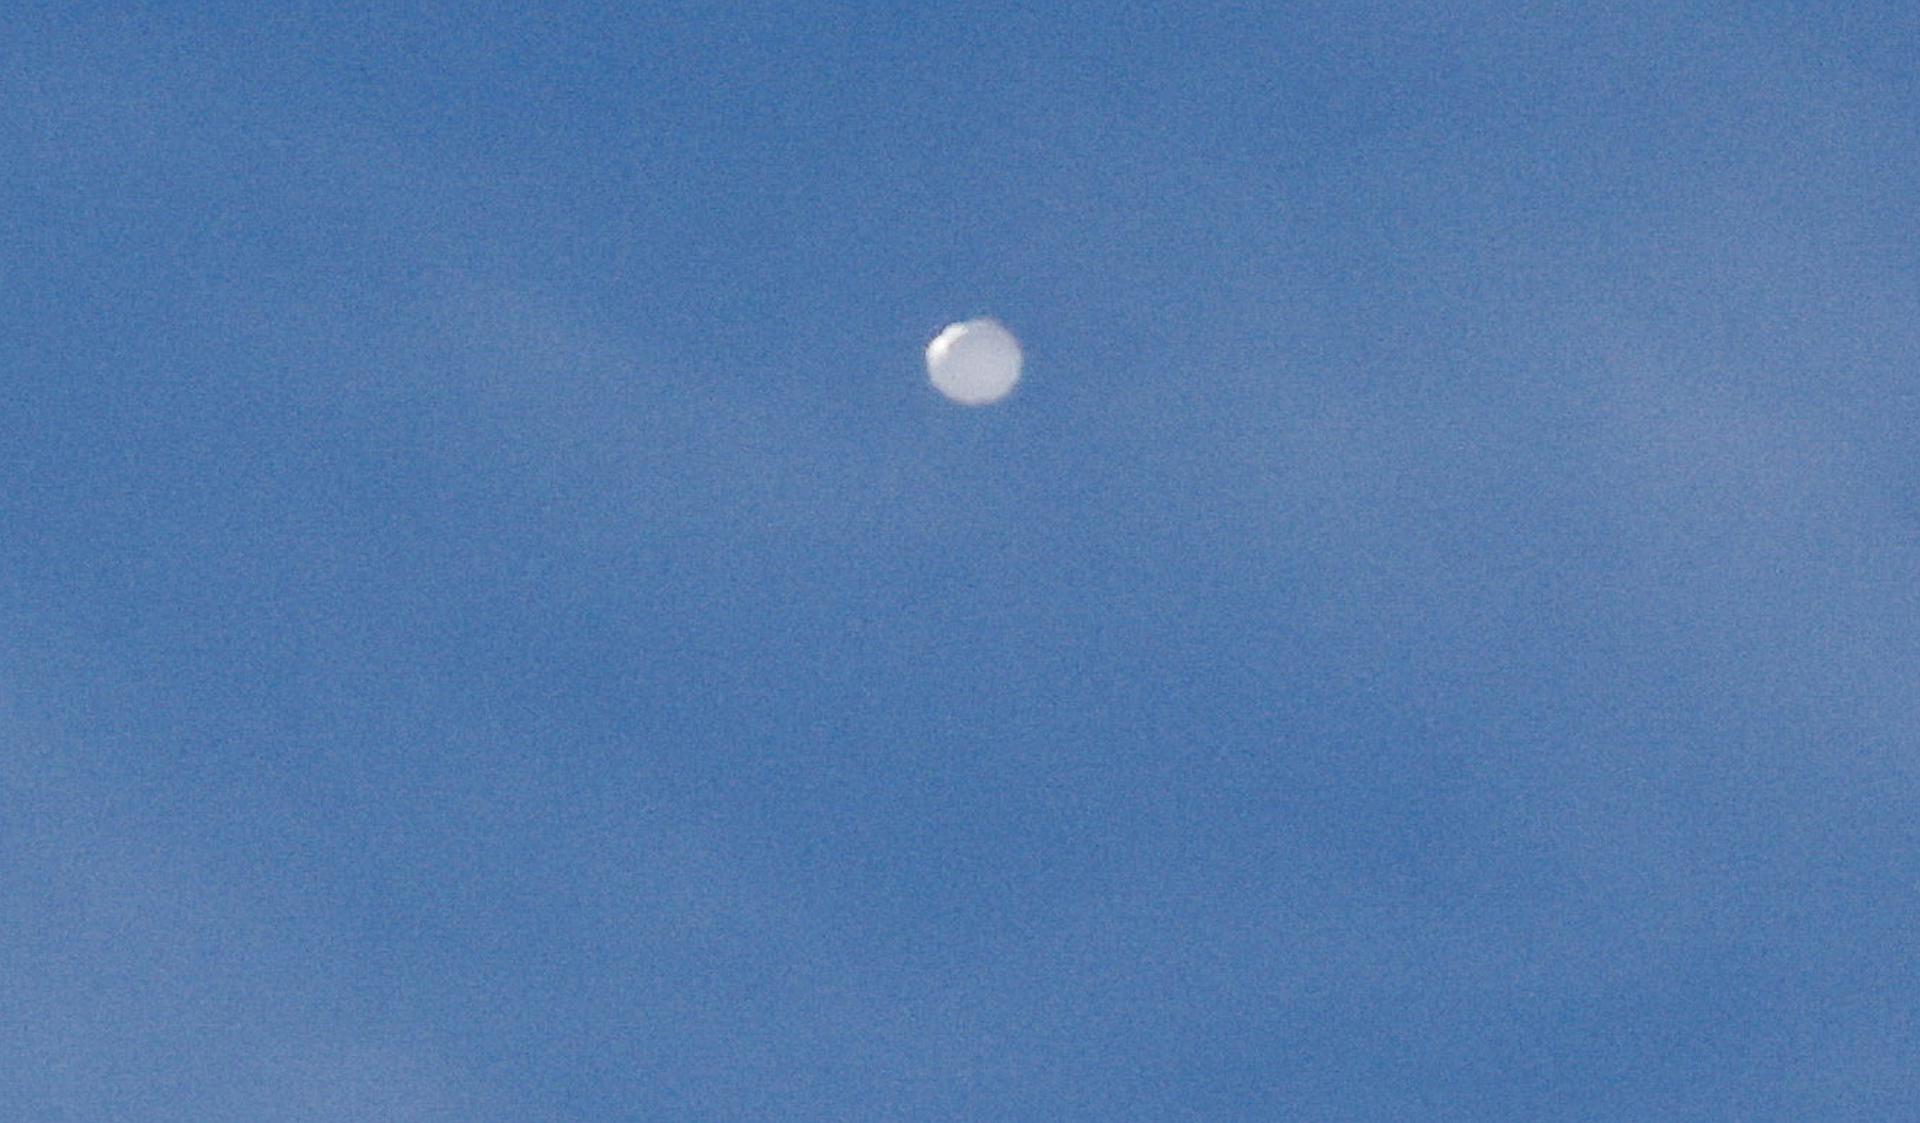 Vista del "globo espía" chino (c) detectado en el espacio aéreo estadounidense en Charlotte (Estados Unidos), en una fotografía de archivo. EFE/ Nell Redmond